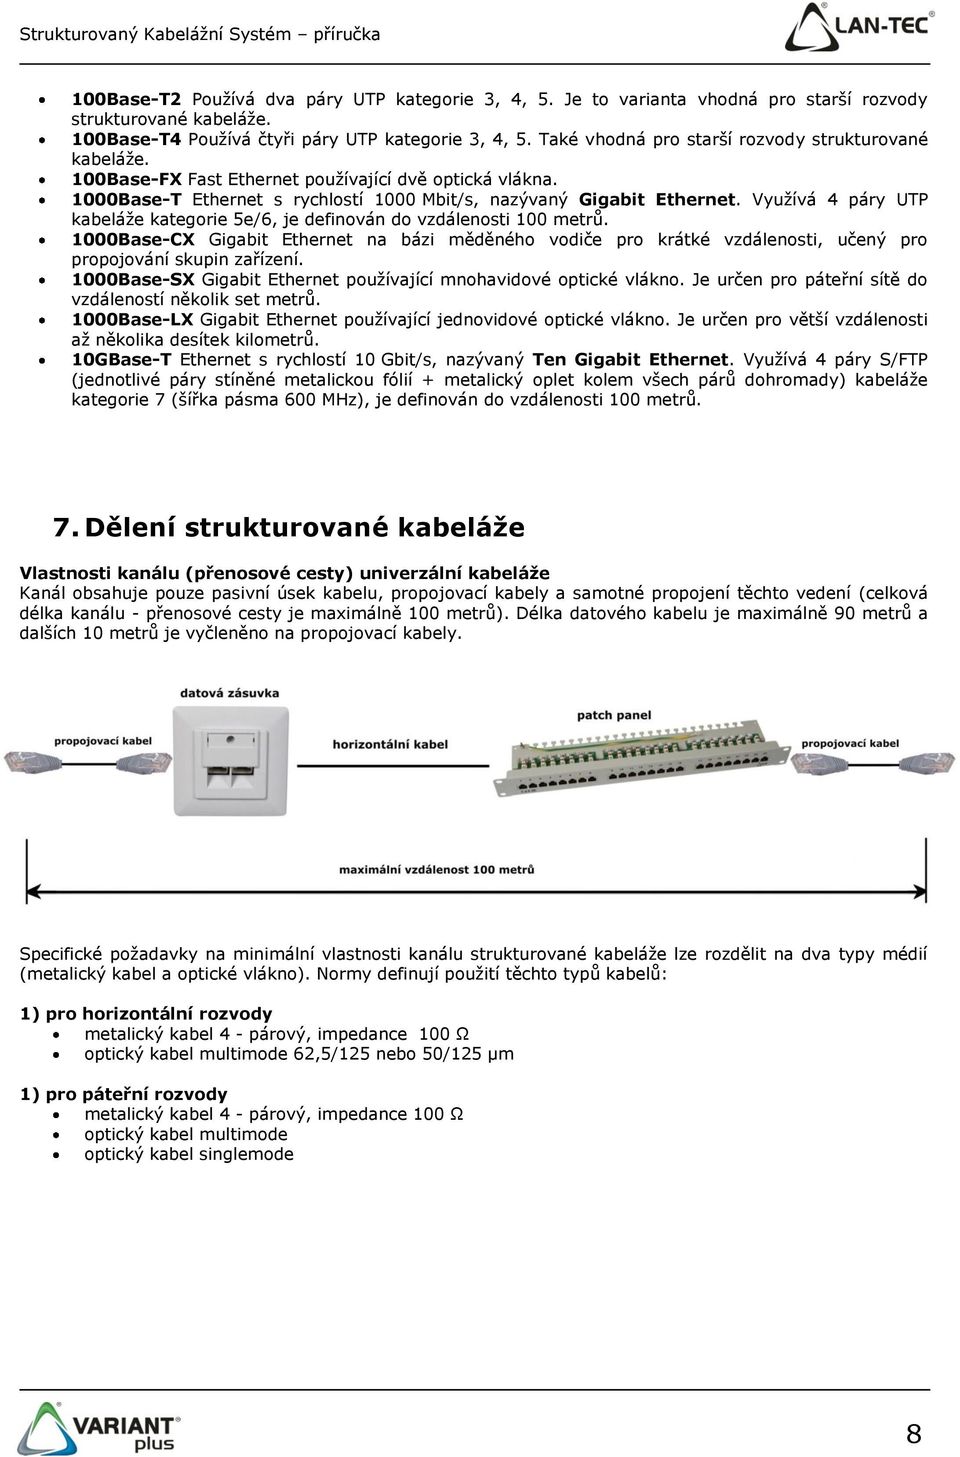 Využívá 4 páry UTP kabeláže kategorie 5e/6, je definován do vzdálenosti 100 metrů. 1000Base-CX Gigabit Ethernet na bázi měděného vodiče pro krátké vzdálenosti, učený pro propojování skupin zařízení.